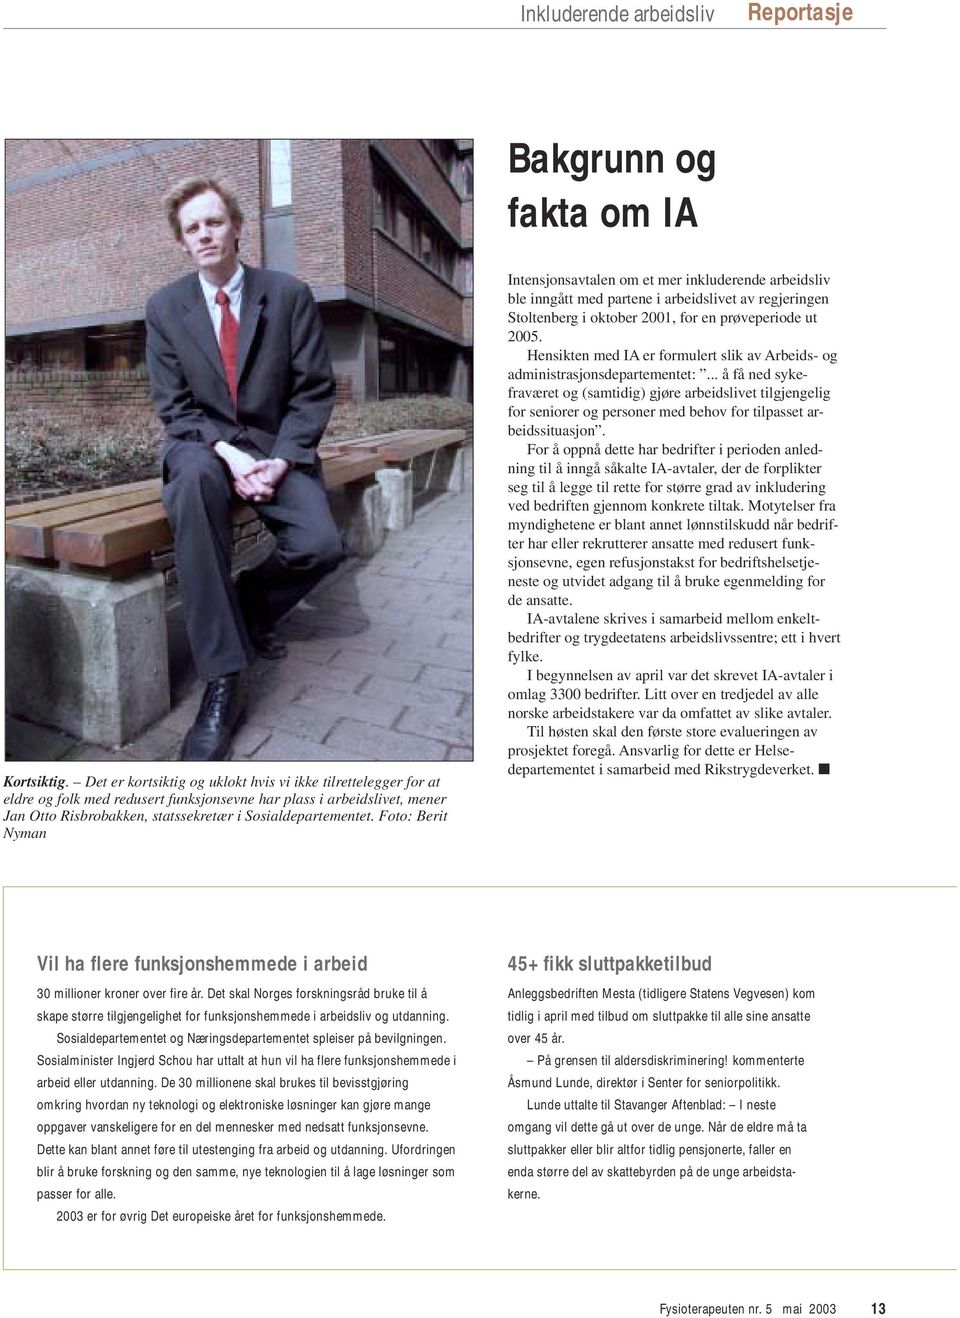 Foto: Berit Nyman Intensjonsavtalen om et mer inkluderende arbeidsliv ble inngått med partene i arbeidslivet av regjeringen Stoltenberg i oktober 2001, for en prøveperiode ut 2005.